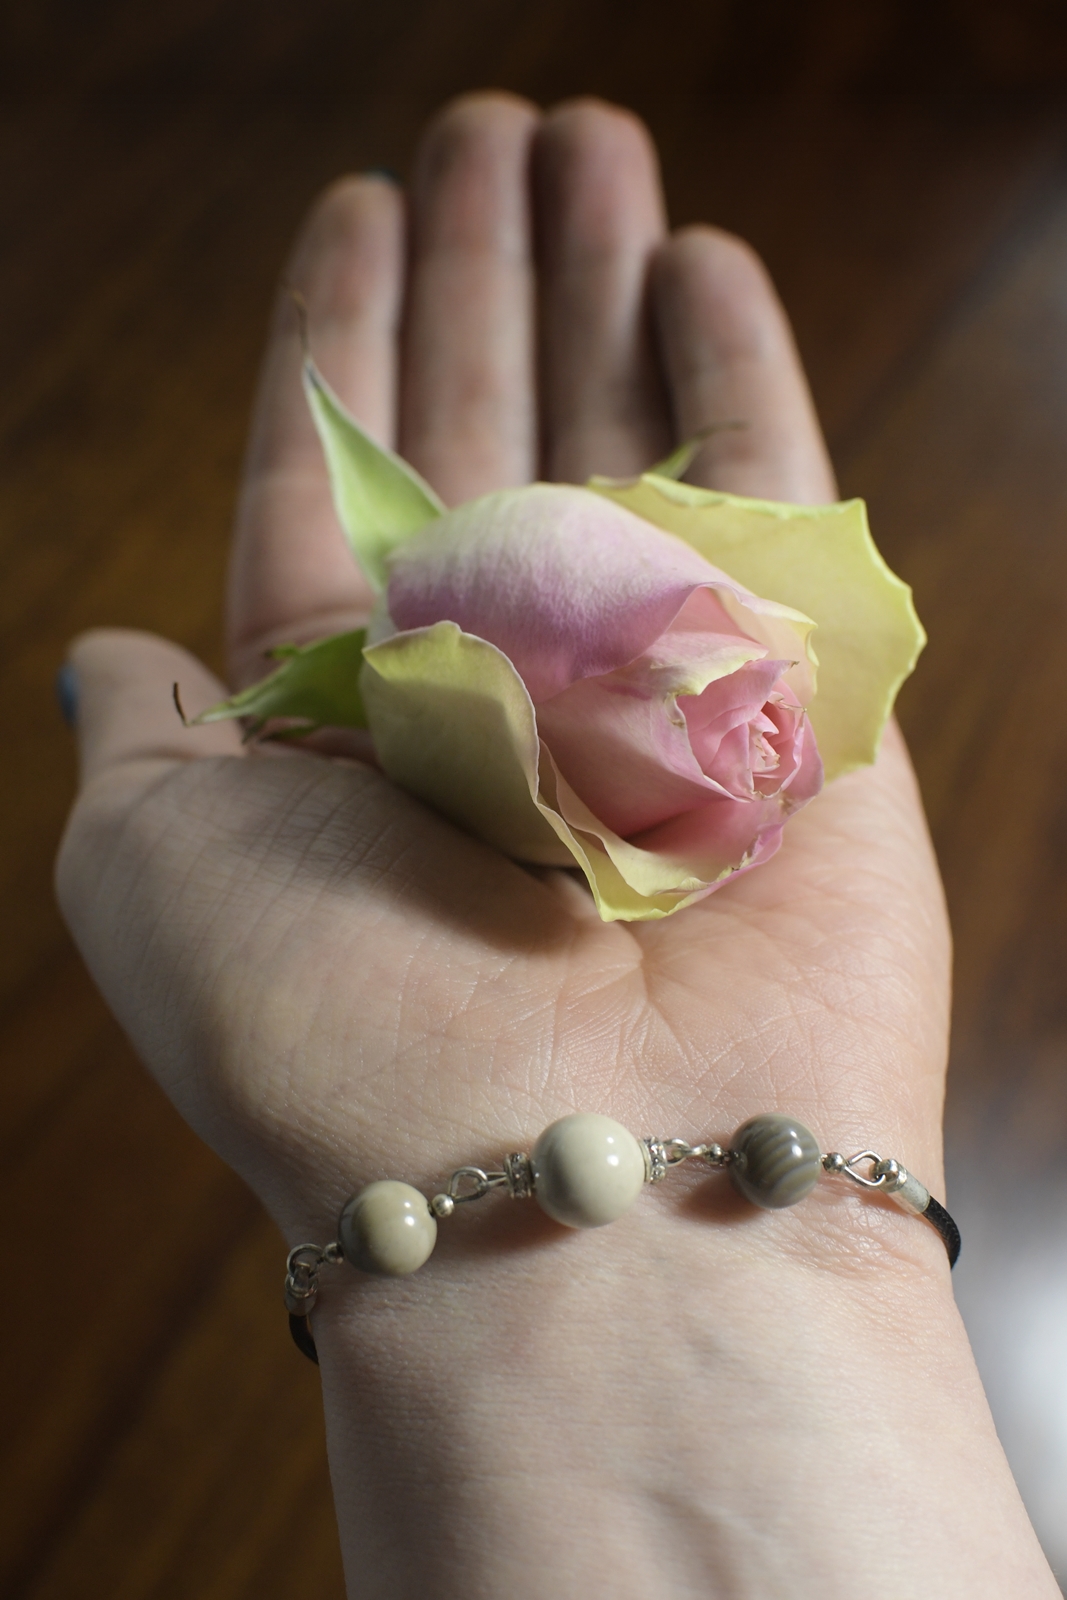 Wyciągnięta dłoń z ułożoną na niej "główką" róży, na nadgarstku biżuteria z krzemienia pasiastego.